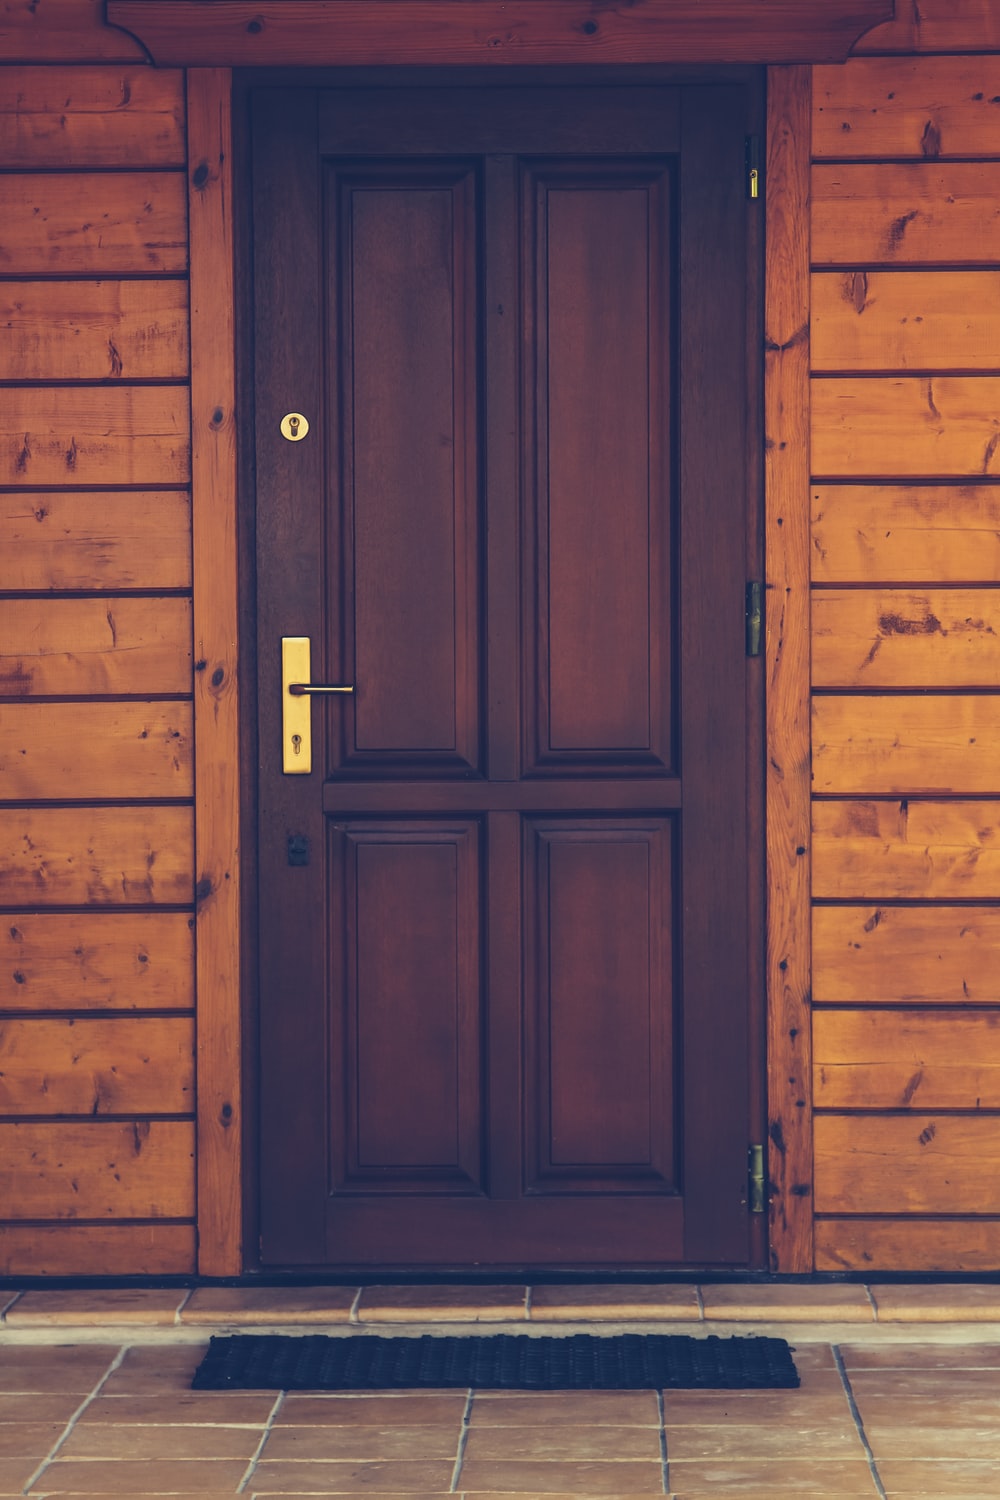 AARYANS 2 762 cm Stylish Door Design Wallpaper For Home And Office  DecorJelyFish Door Wallpaper Self Adhesive Sticker Price in India  Buy  AARYANS 2 762 cm Stylish Door Design Wallpaper For